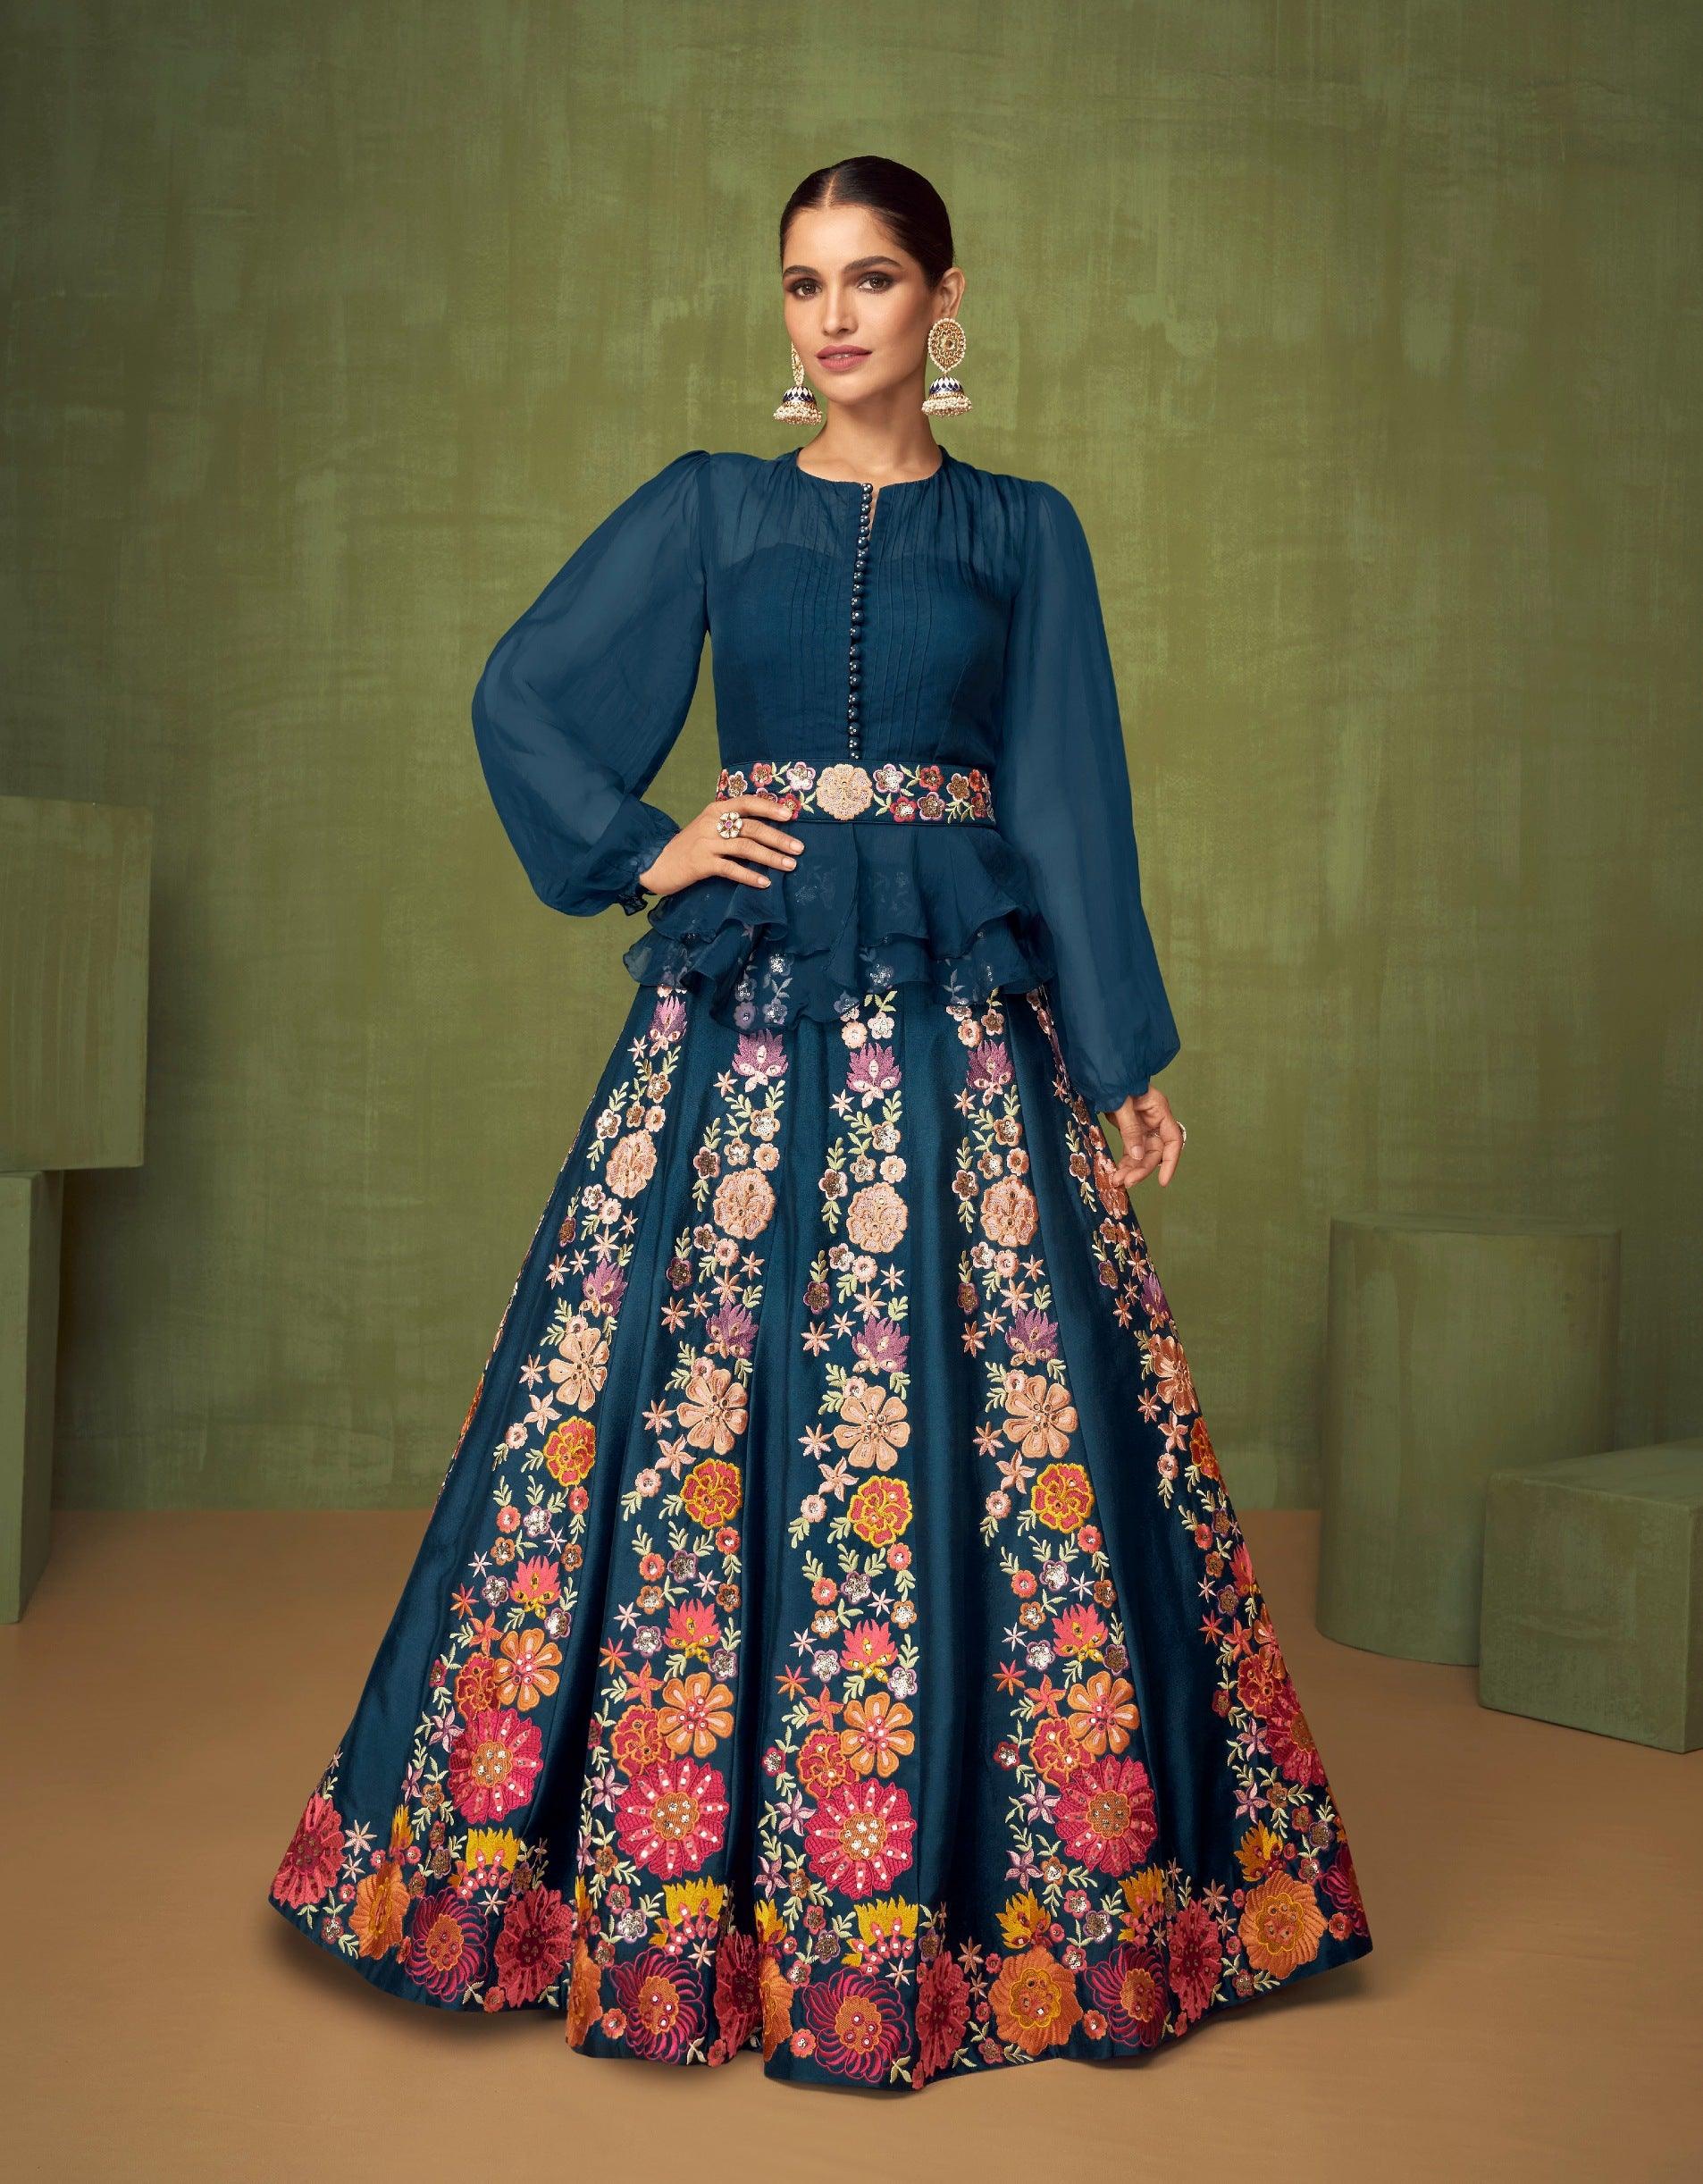 Party Wear Indo-Western Dresses for Women: Buy Online | Utsav Fashion